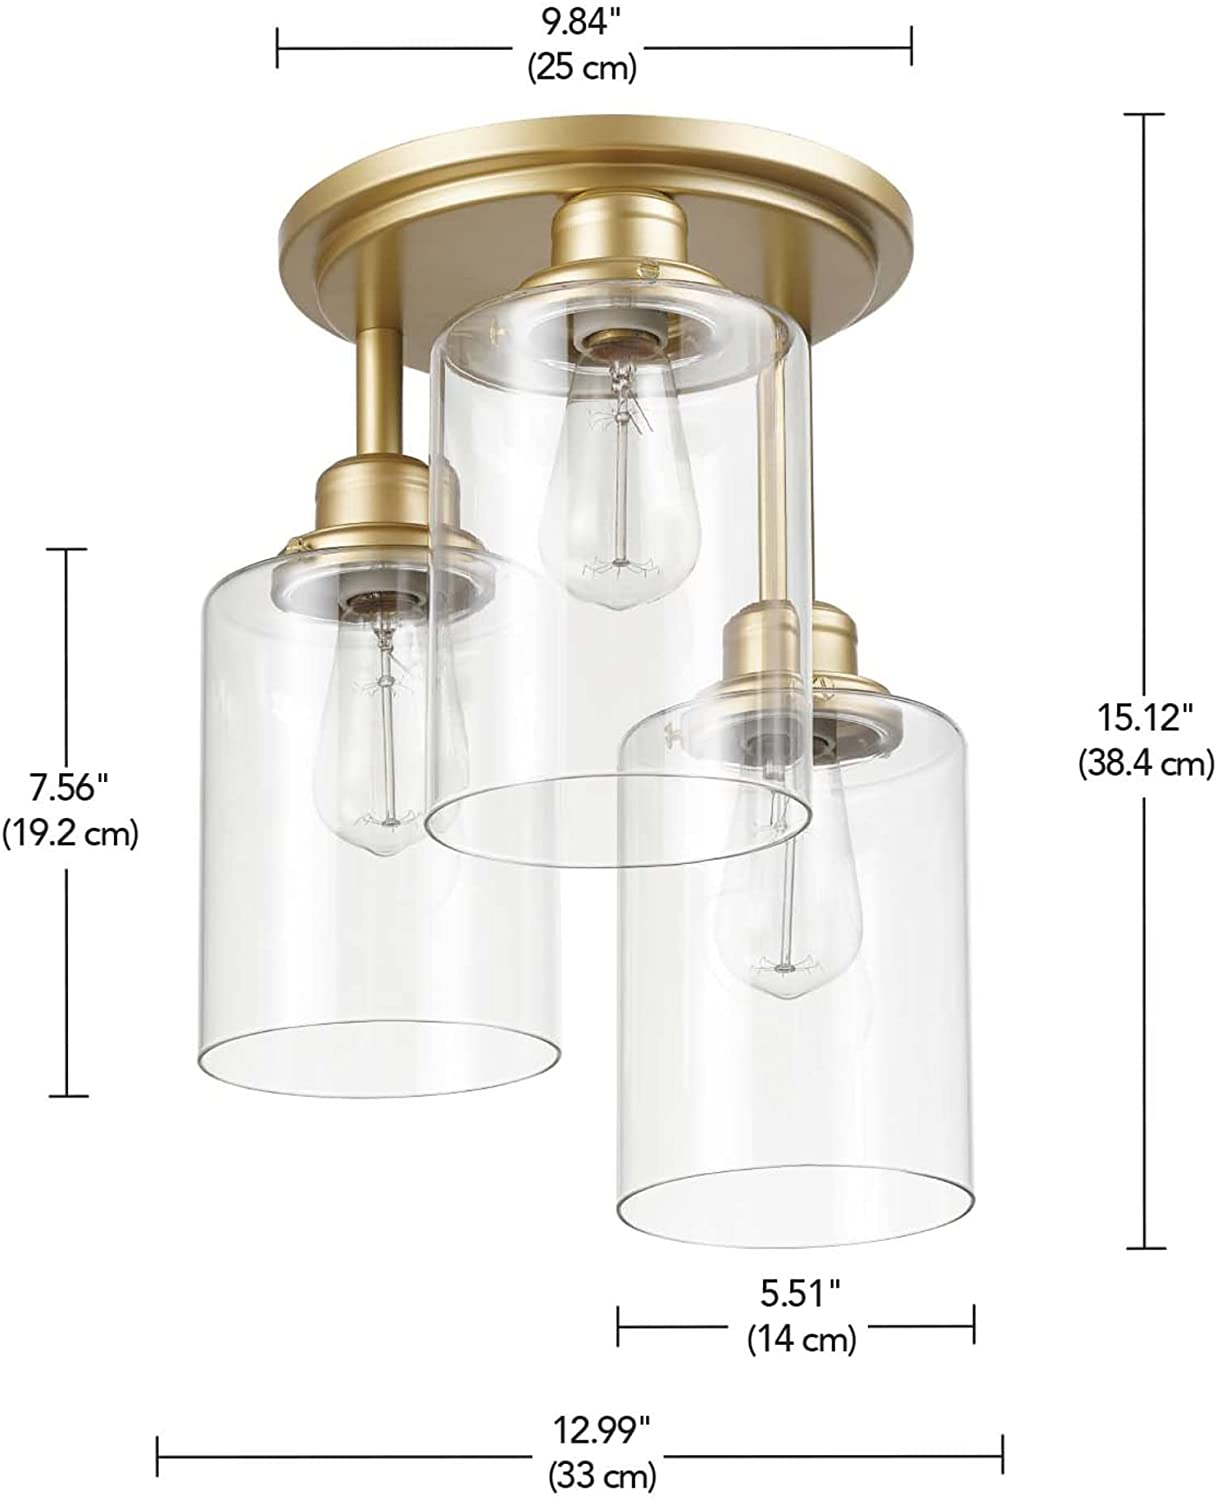 3 light  3-Light Flush Mount Ceiling Light glass ceiling lamp with gold finish